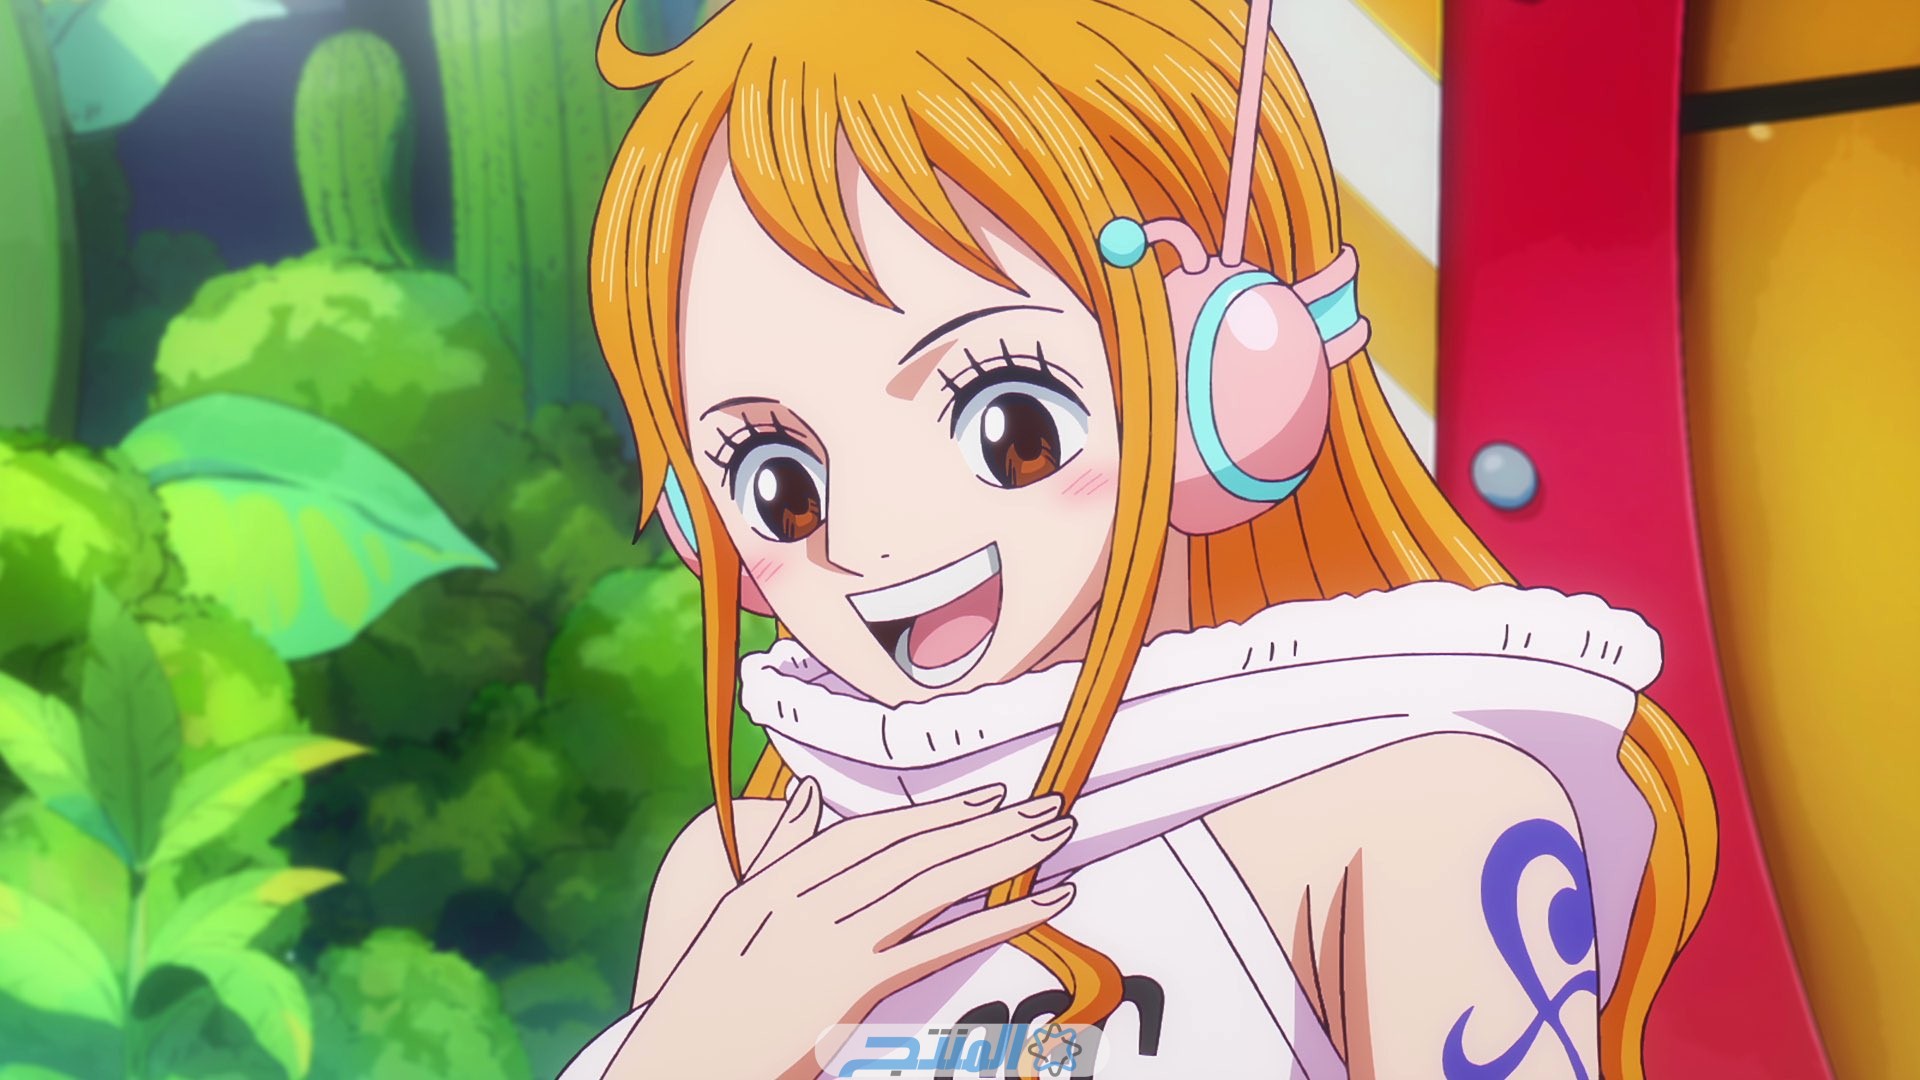 مشاهدة انمي One Piece الحلقة 1094 مترجم كامل بجودة HD وFHD